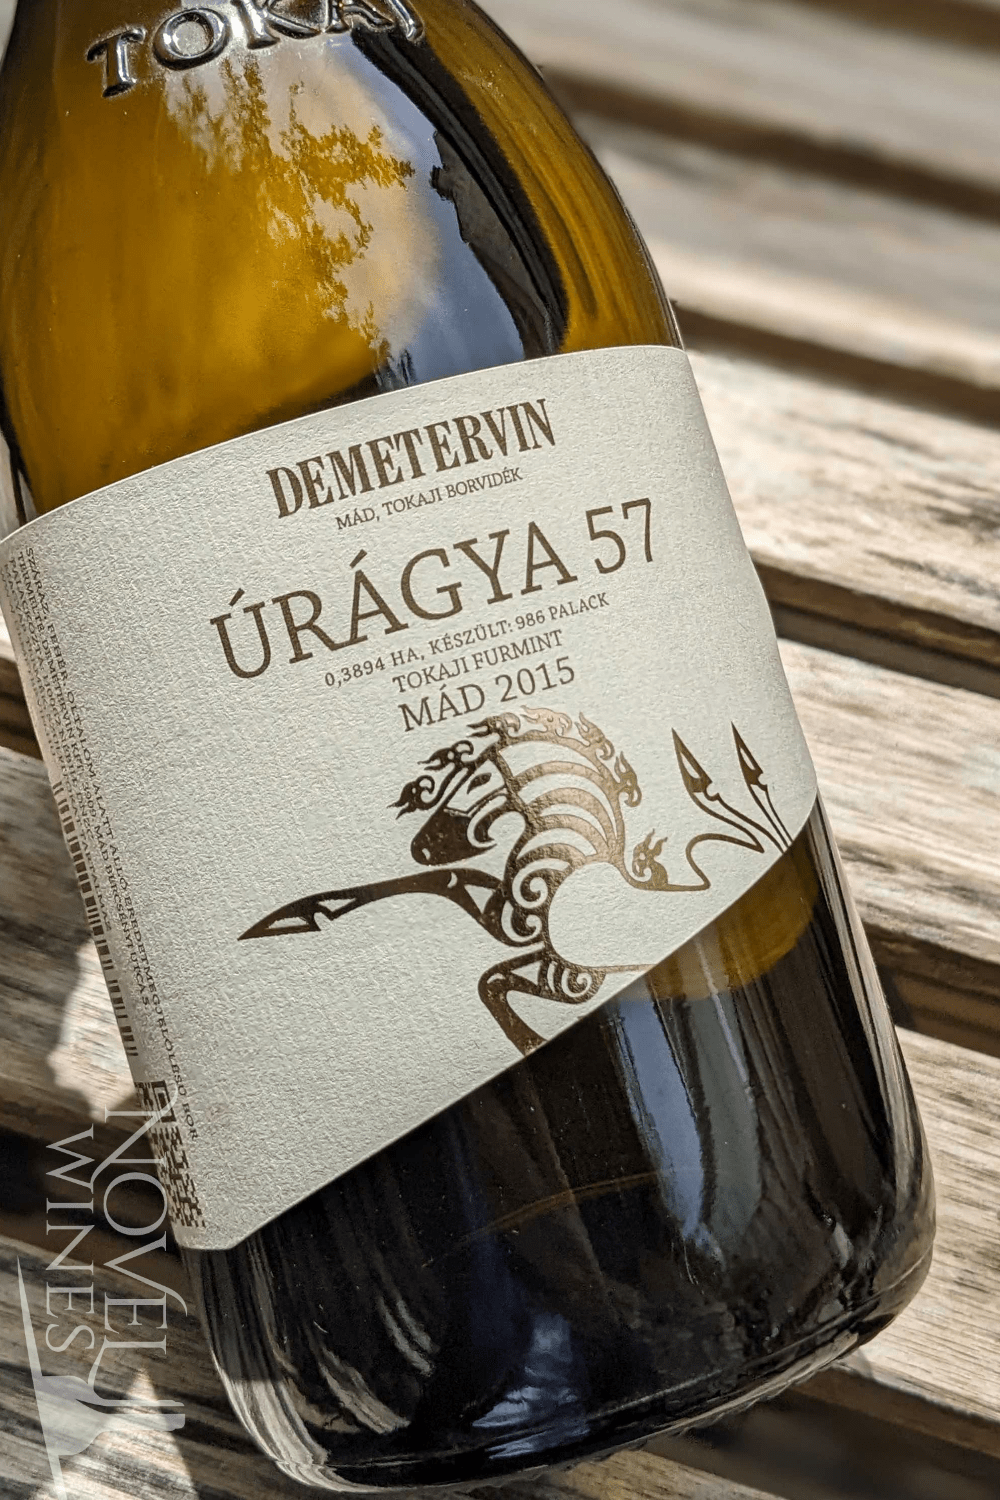 Demeter White Wine Demetervin Úrágya 57 Tokaj Furmint 2015, Hungary